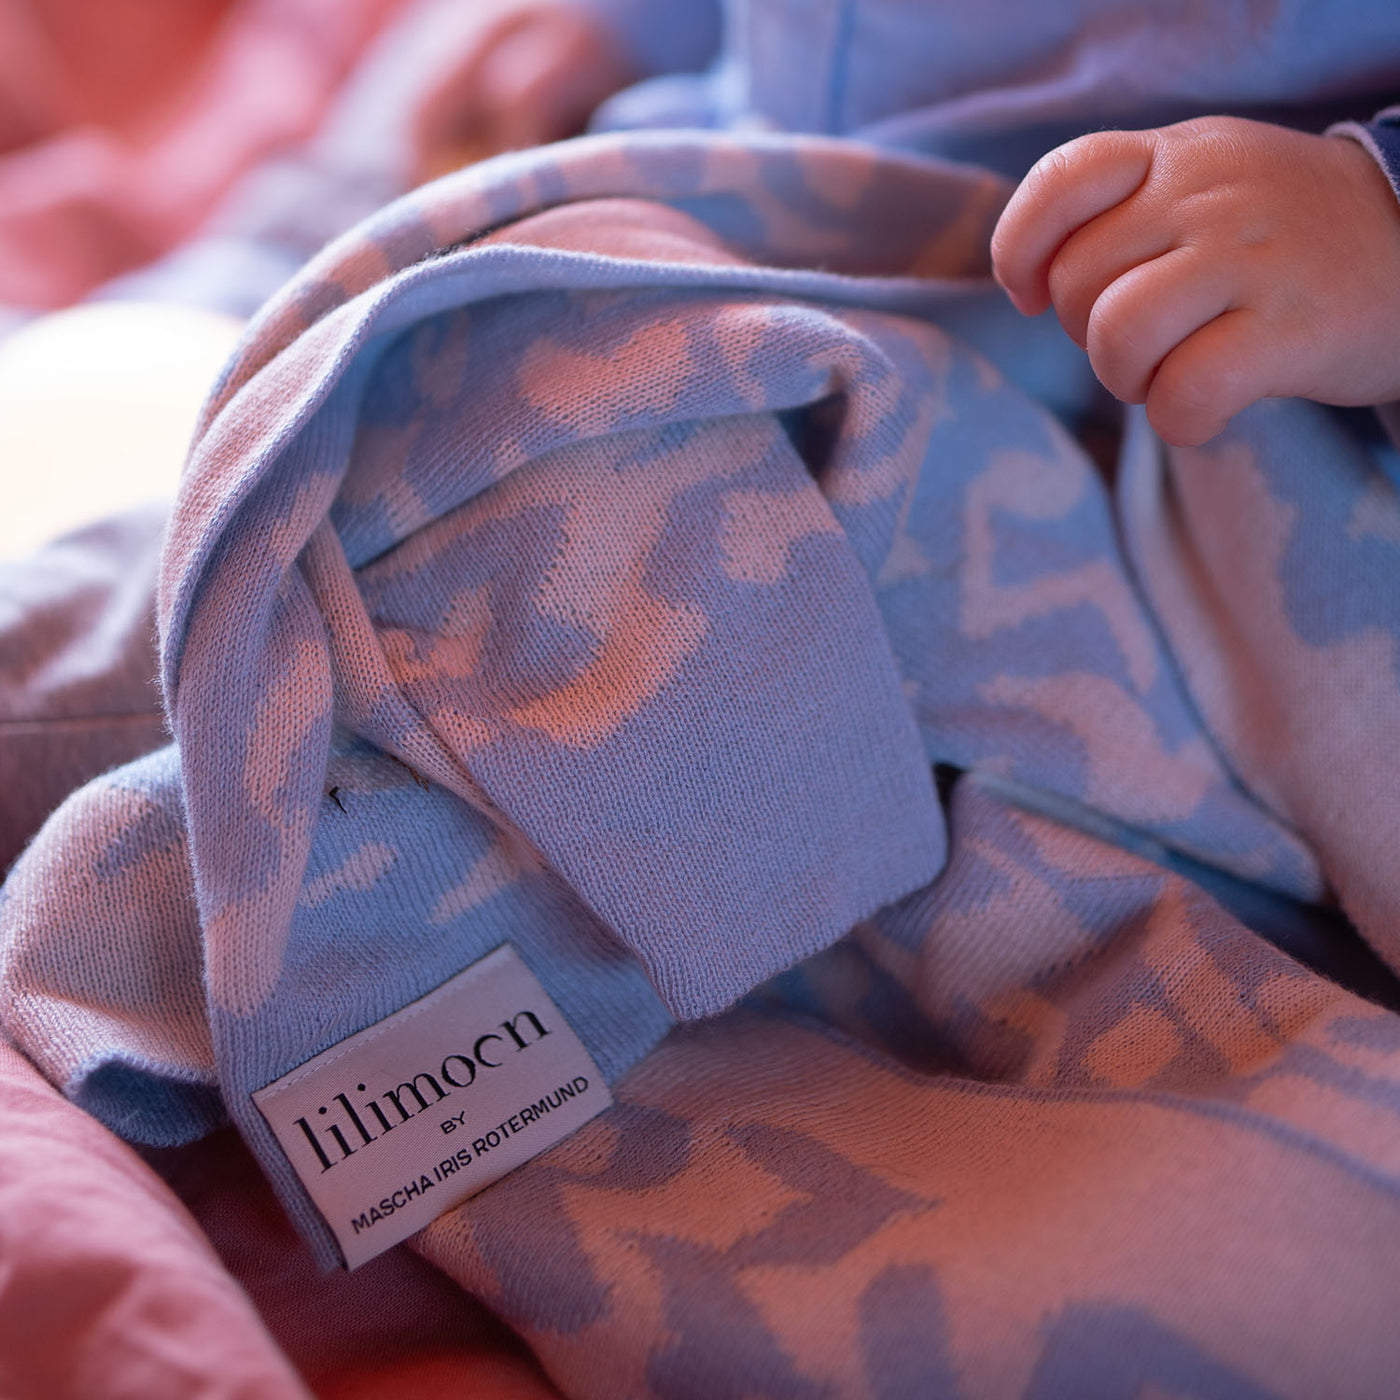 Personalisierte Babydecke Ocean aus Baumwolle mit Kaschmir in Hellblau und Cremeweiss. By LILIMOON